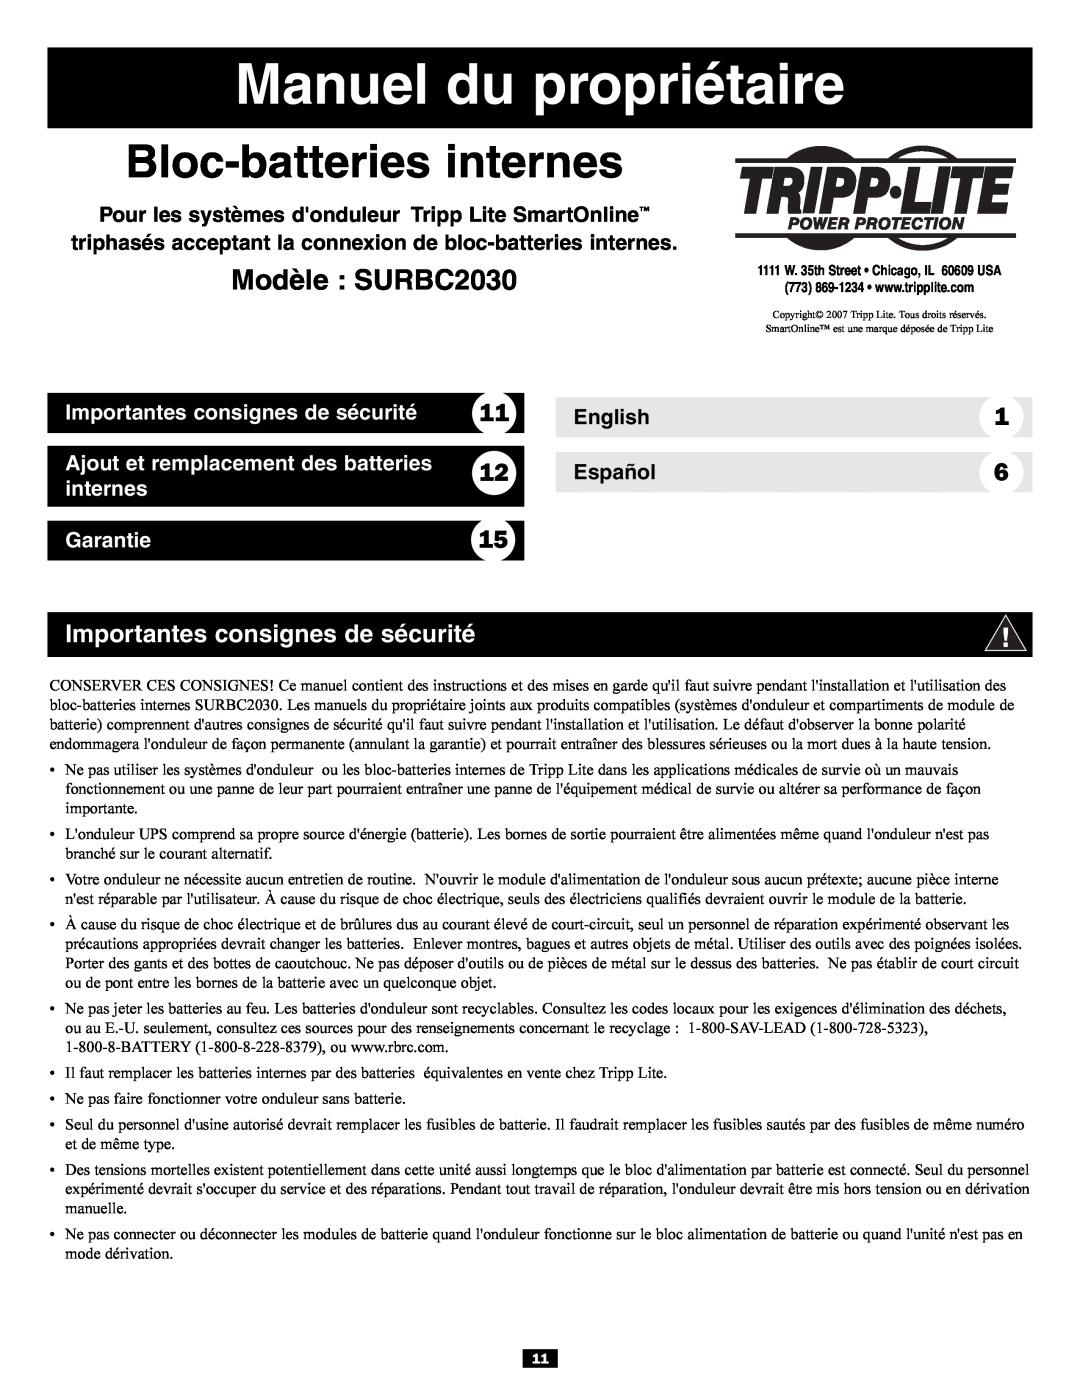 Tripp Lite Manuel du propriétaire, Bloc-batteries internes, Modèle SURBC2030, Importantes consignes de sécurité 